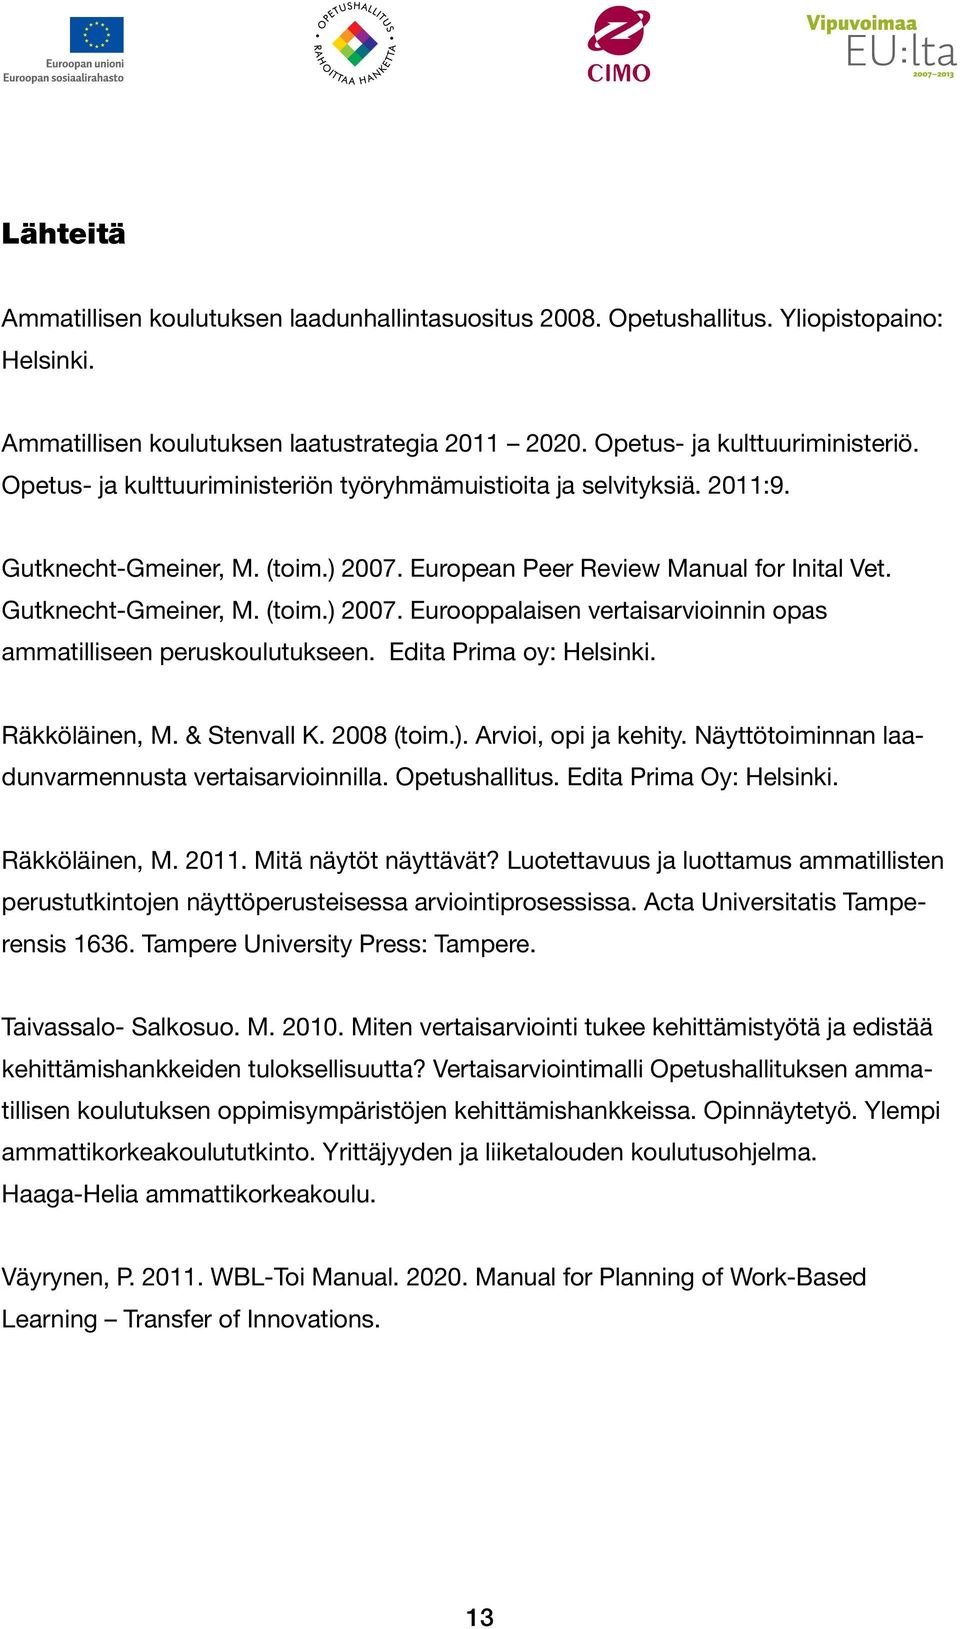 Edita Prima oy: Helsinki. Räkköläinen, M. & Stenvall K. 2008 (toim.). Arvioi, opi ja kehity. Näyttötoiminnan laadunvarmennusta vertaisarvioinnilla. Opetushallitus. Edita Prima Oy: Helsinki.